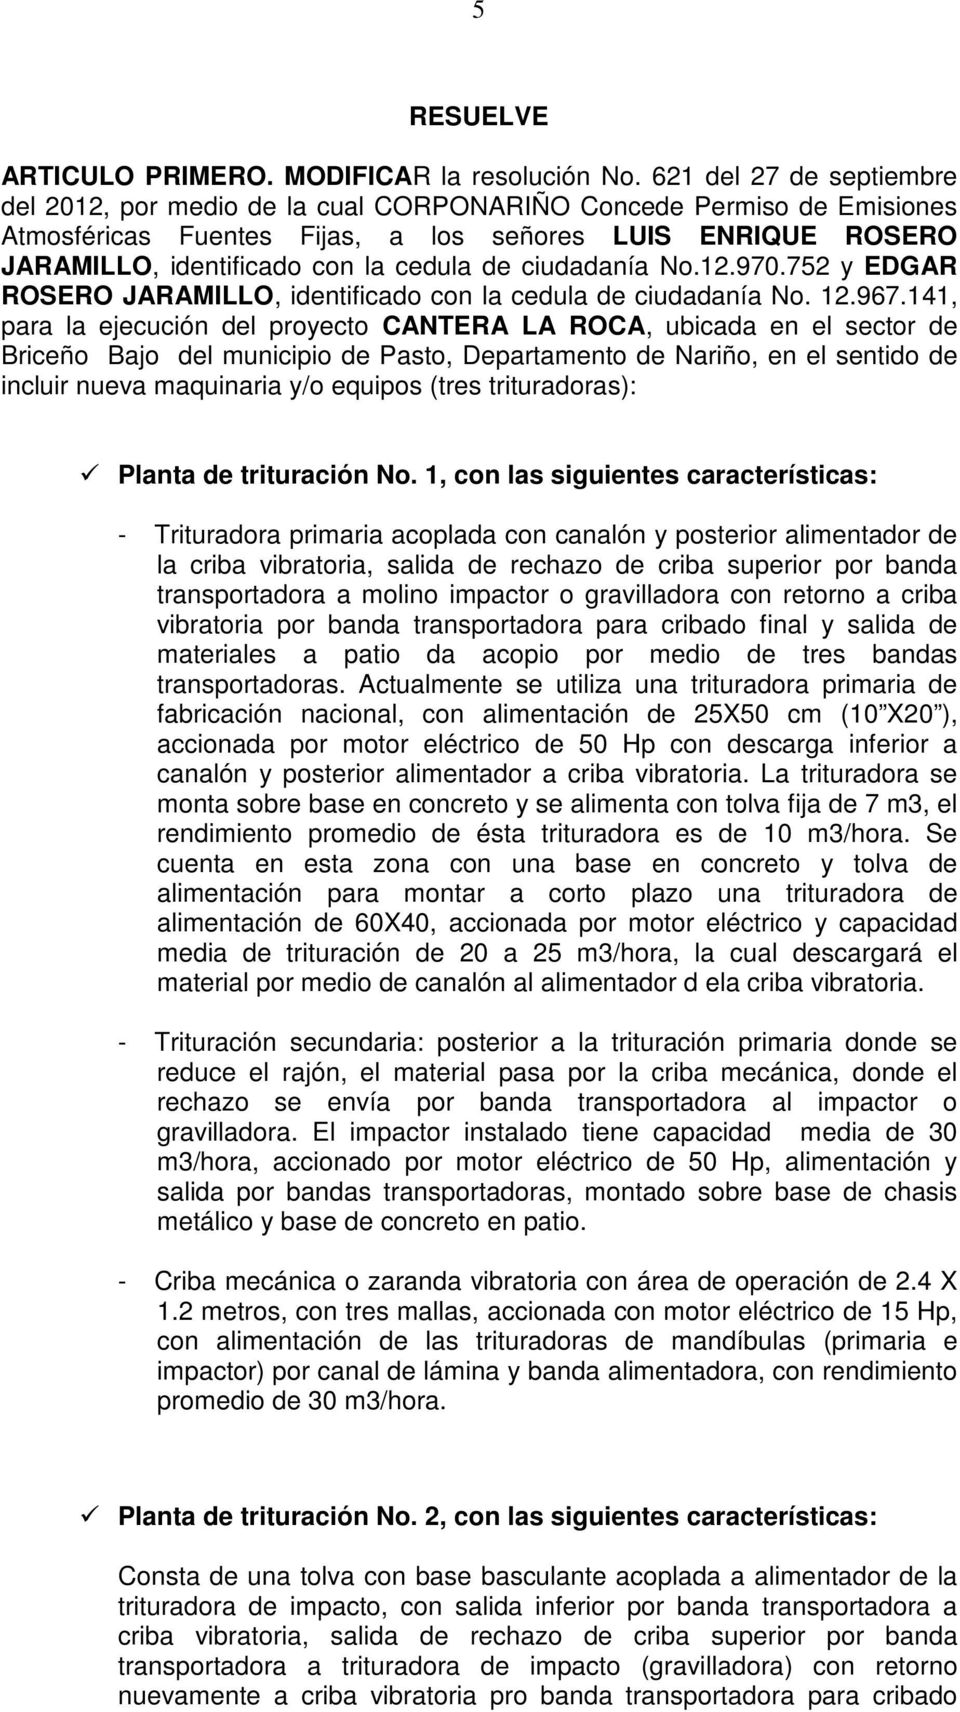 ciudadanía No.12.970.752 y EDGAR ROSERO JARAMILLO, identificado con la cedula de ciudadanía No. 12.967.